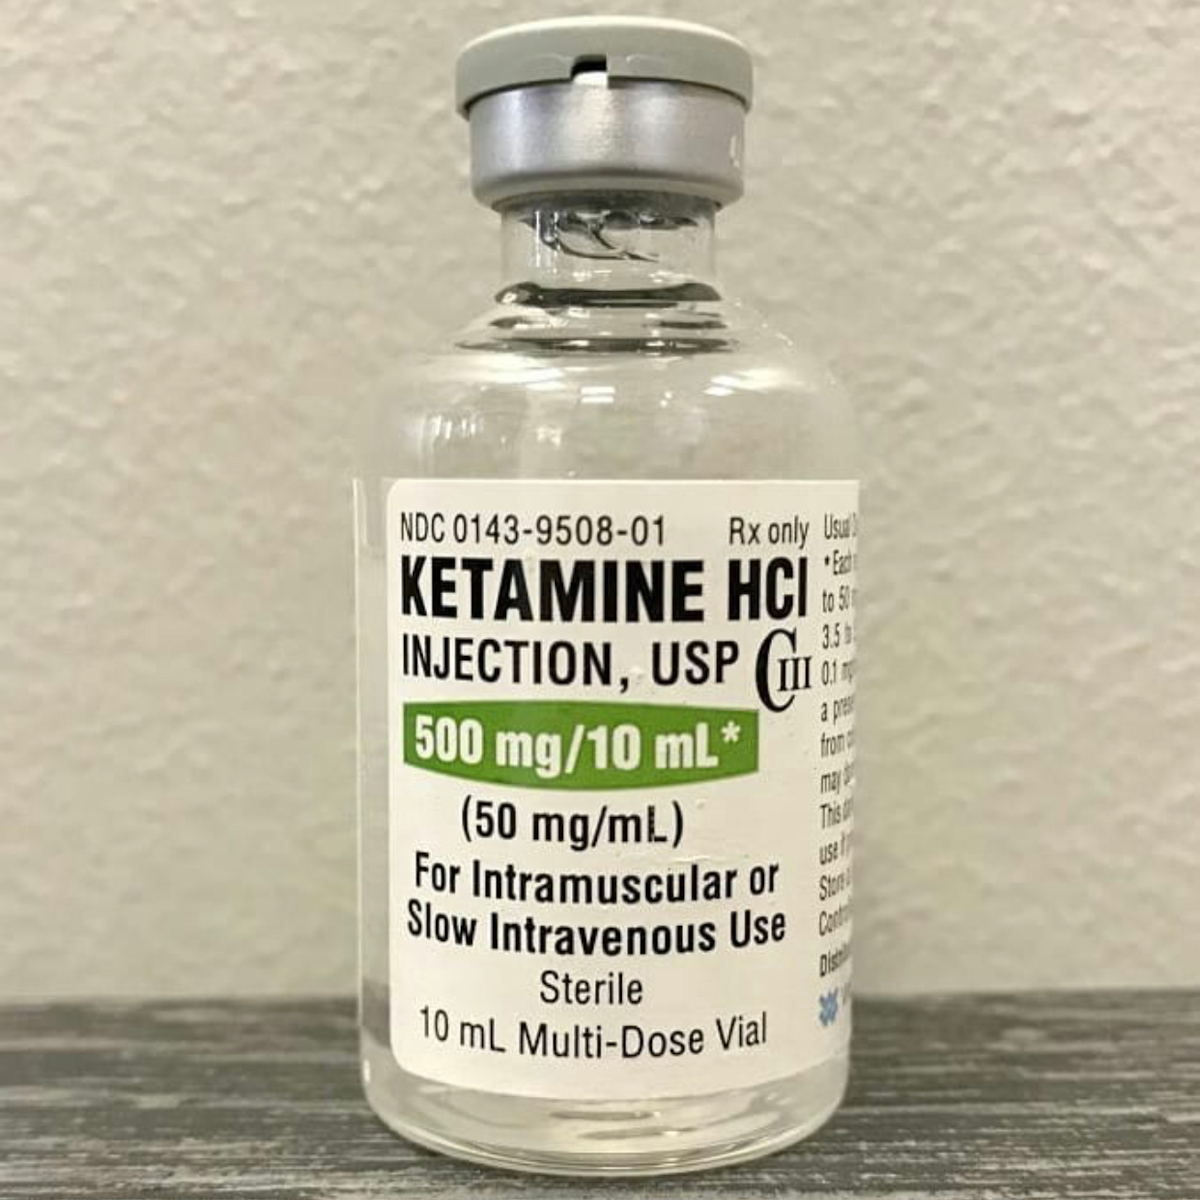 Comprar Ketamina en línea